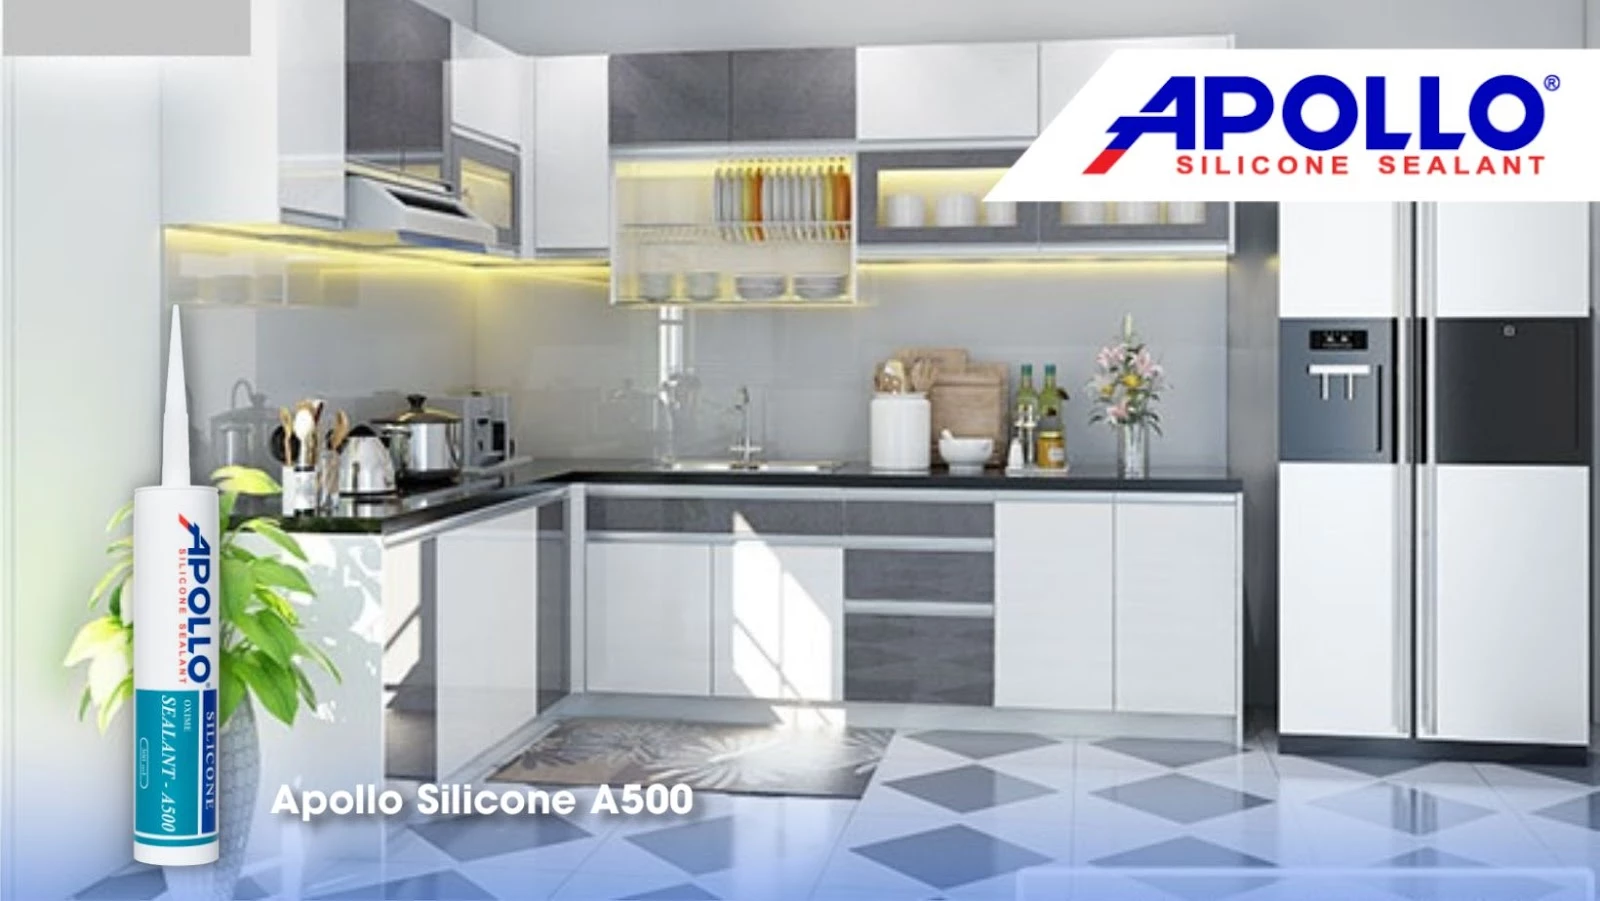 Keo silicone chịu nhiệt Apollo A500 giúp không gian bếp của bạn luôn sạch đẹp 